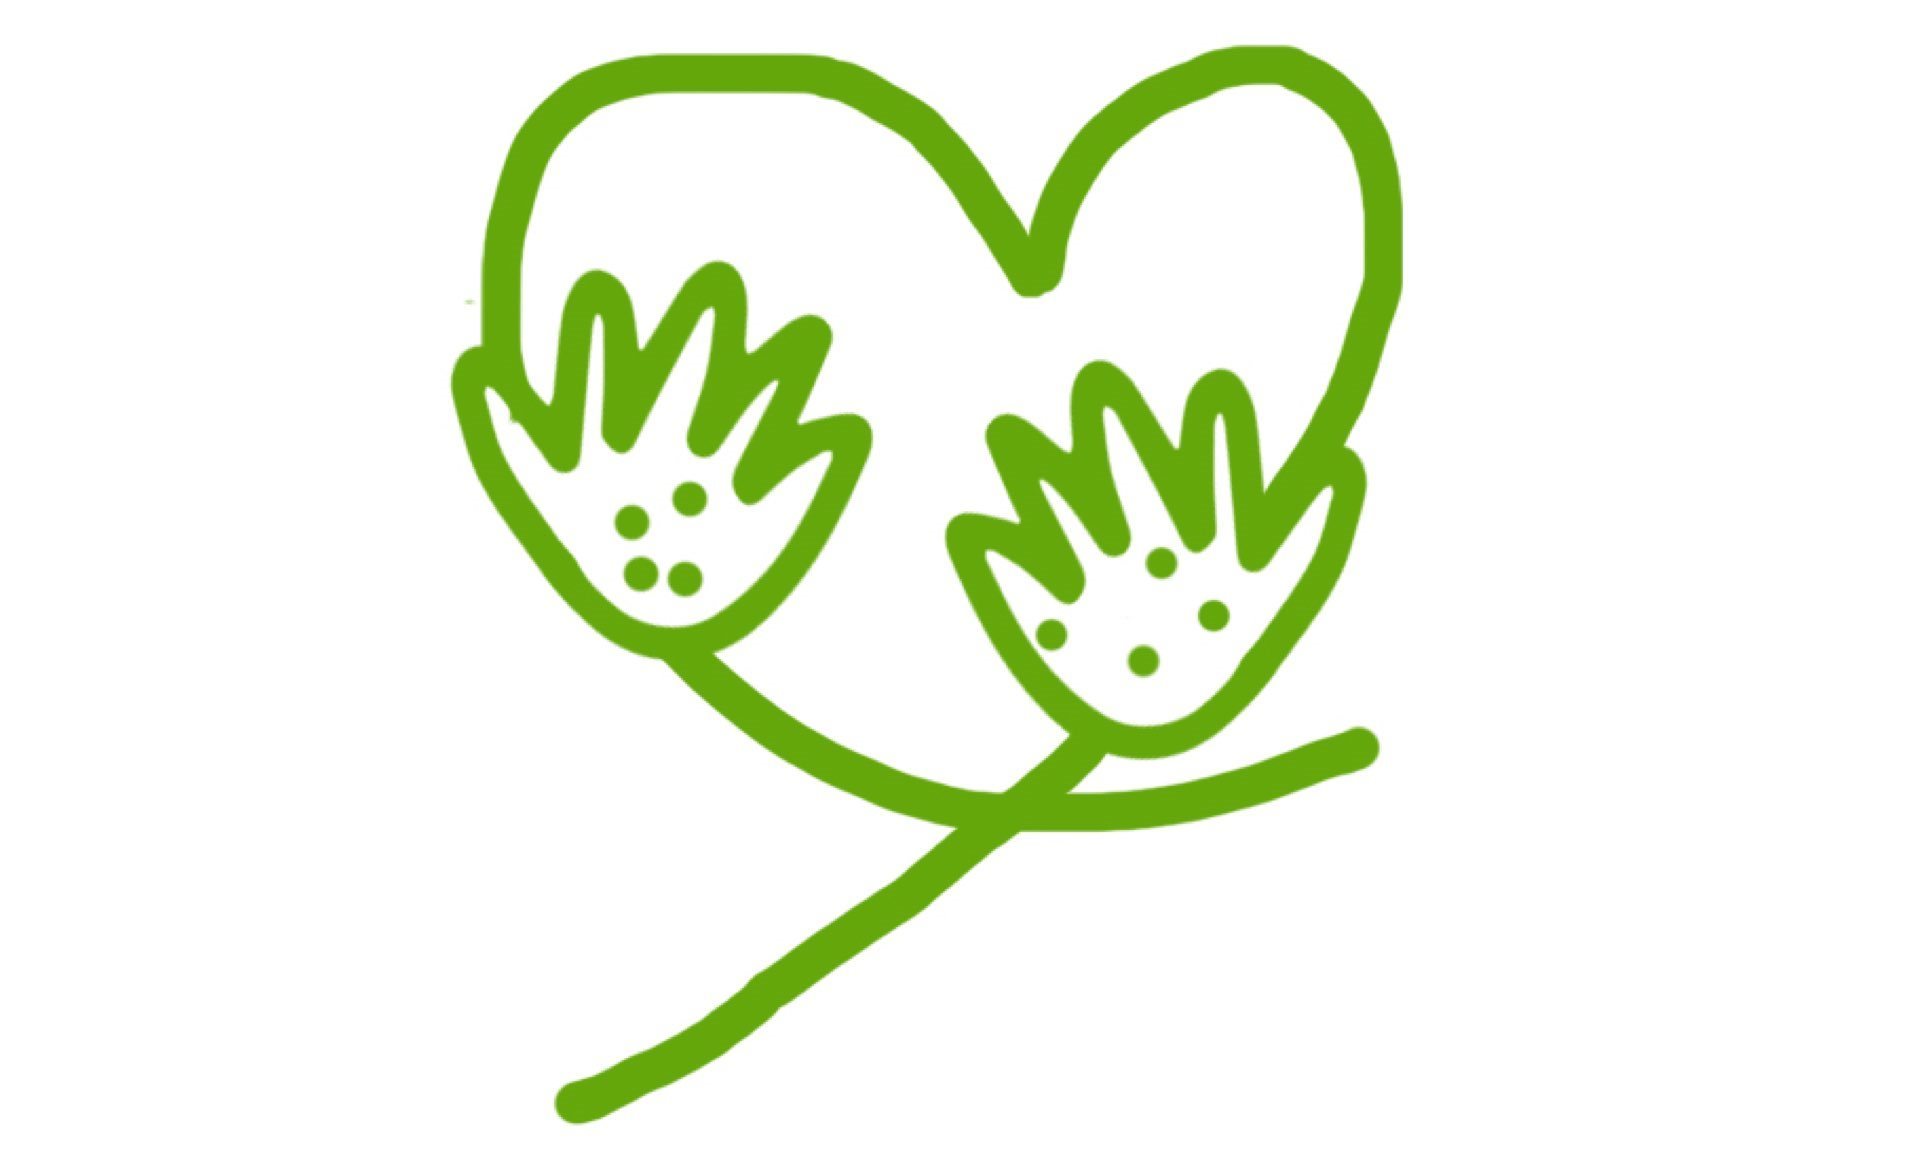 Abstrakt grön illustration med hjärta och händer